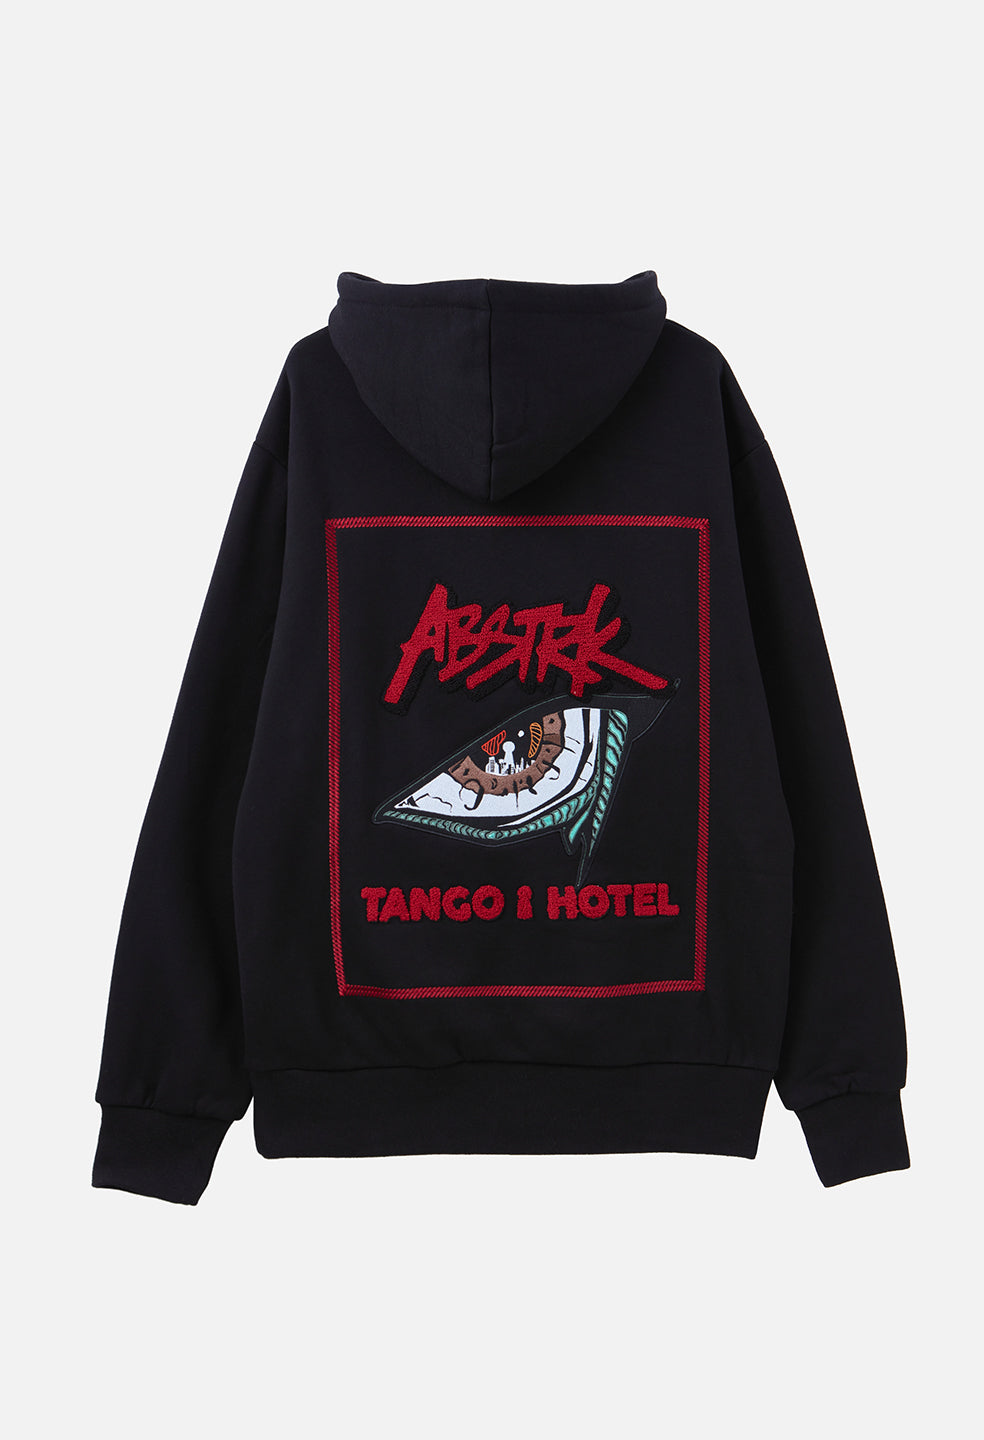 Tango Hotel ABSTRK Hoodie